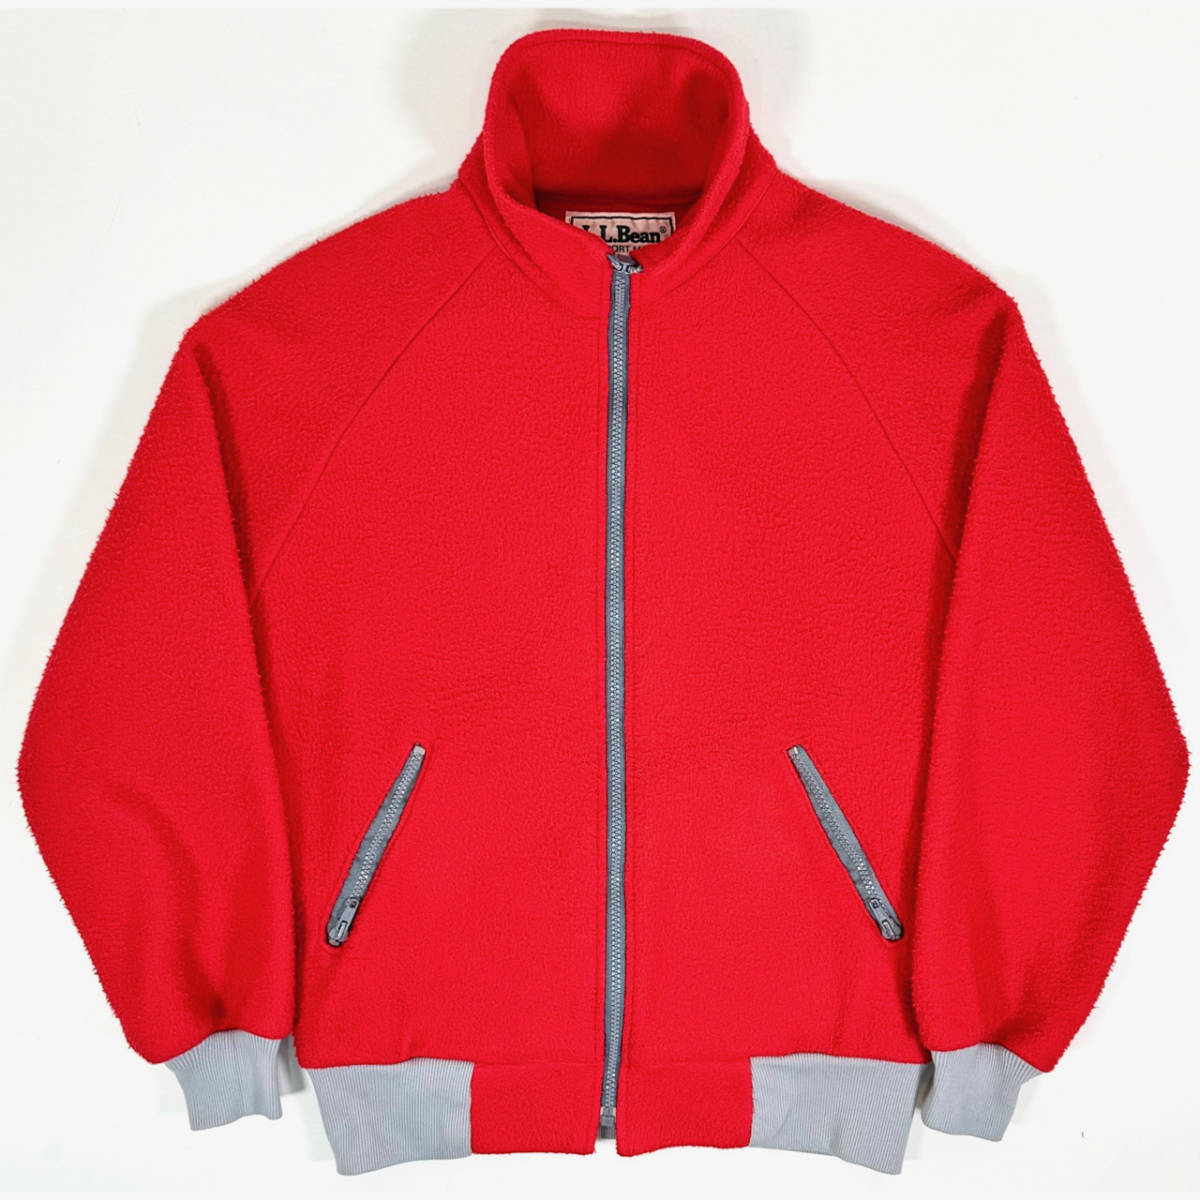 USA製 1980s L.L.Bean Fleece jacket M Red 80年代 ヴィンテージ エルエルビーン フリースジャケット VINTAGE レッド